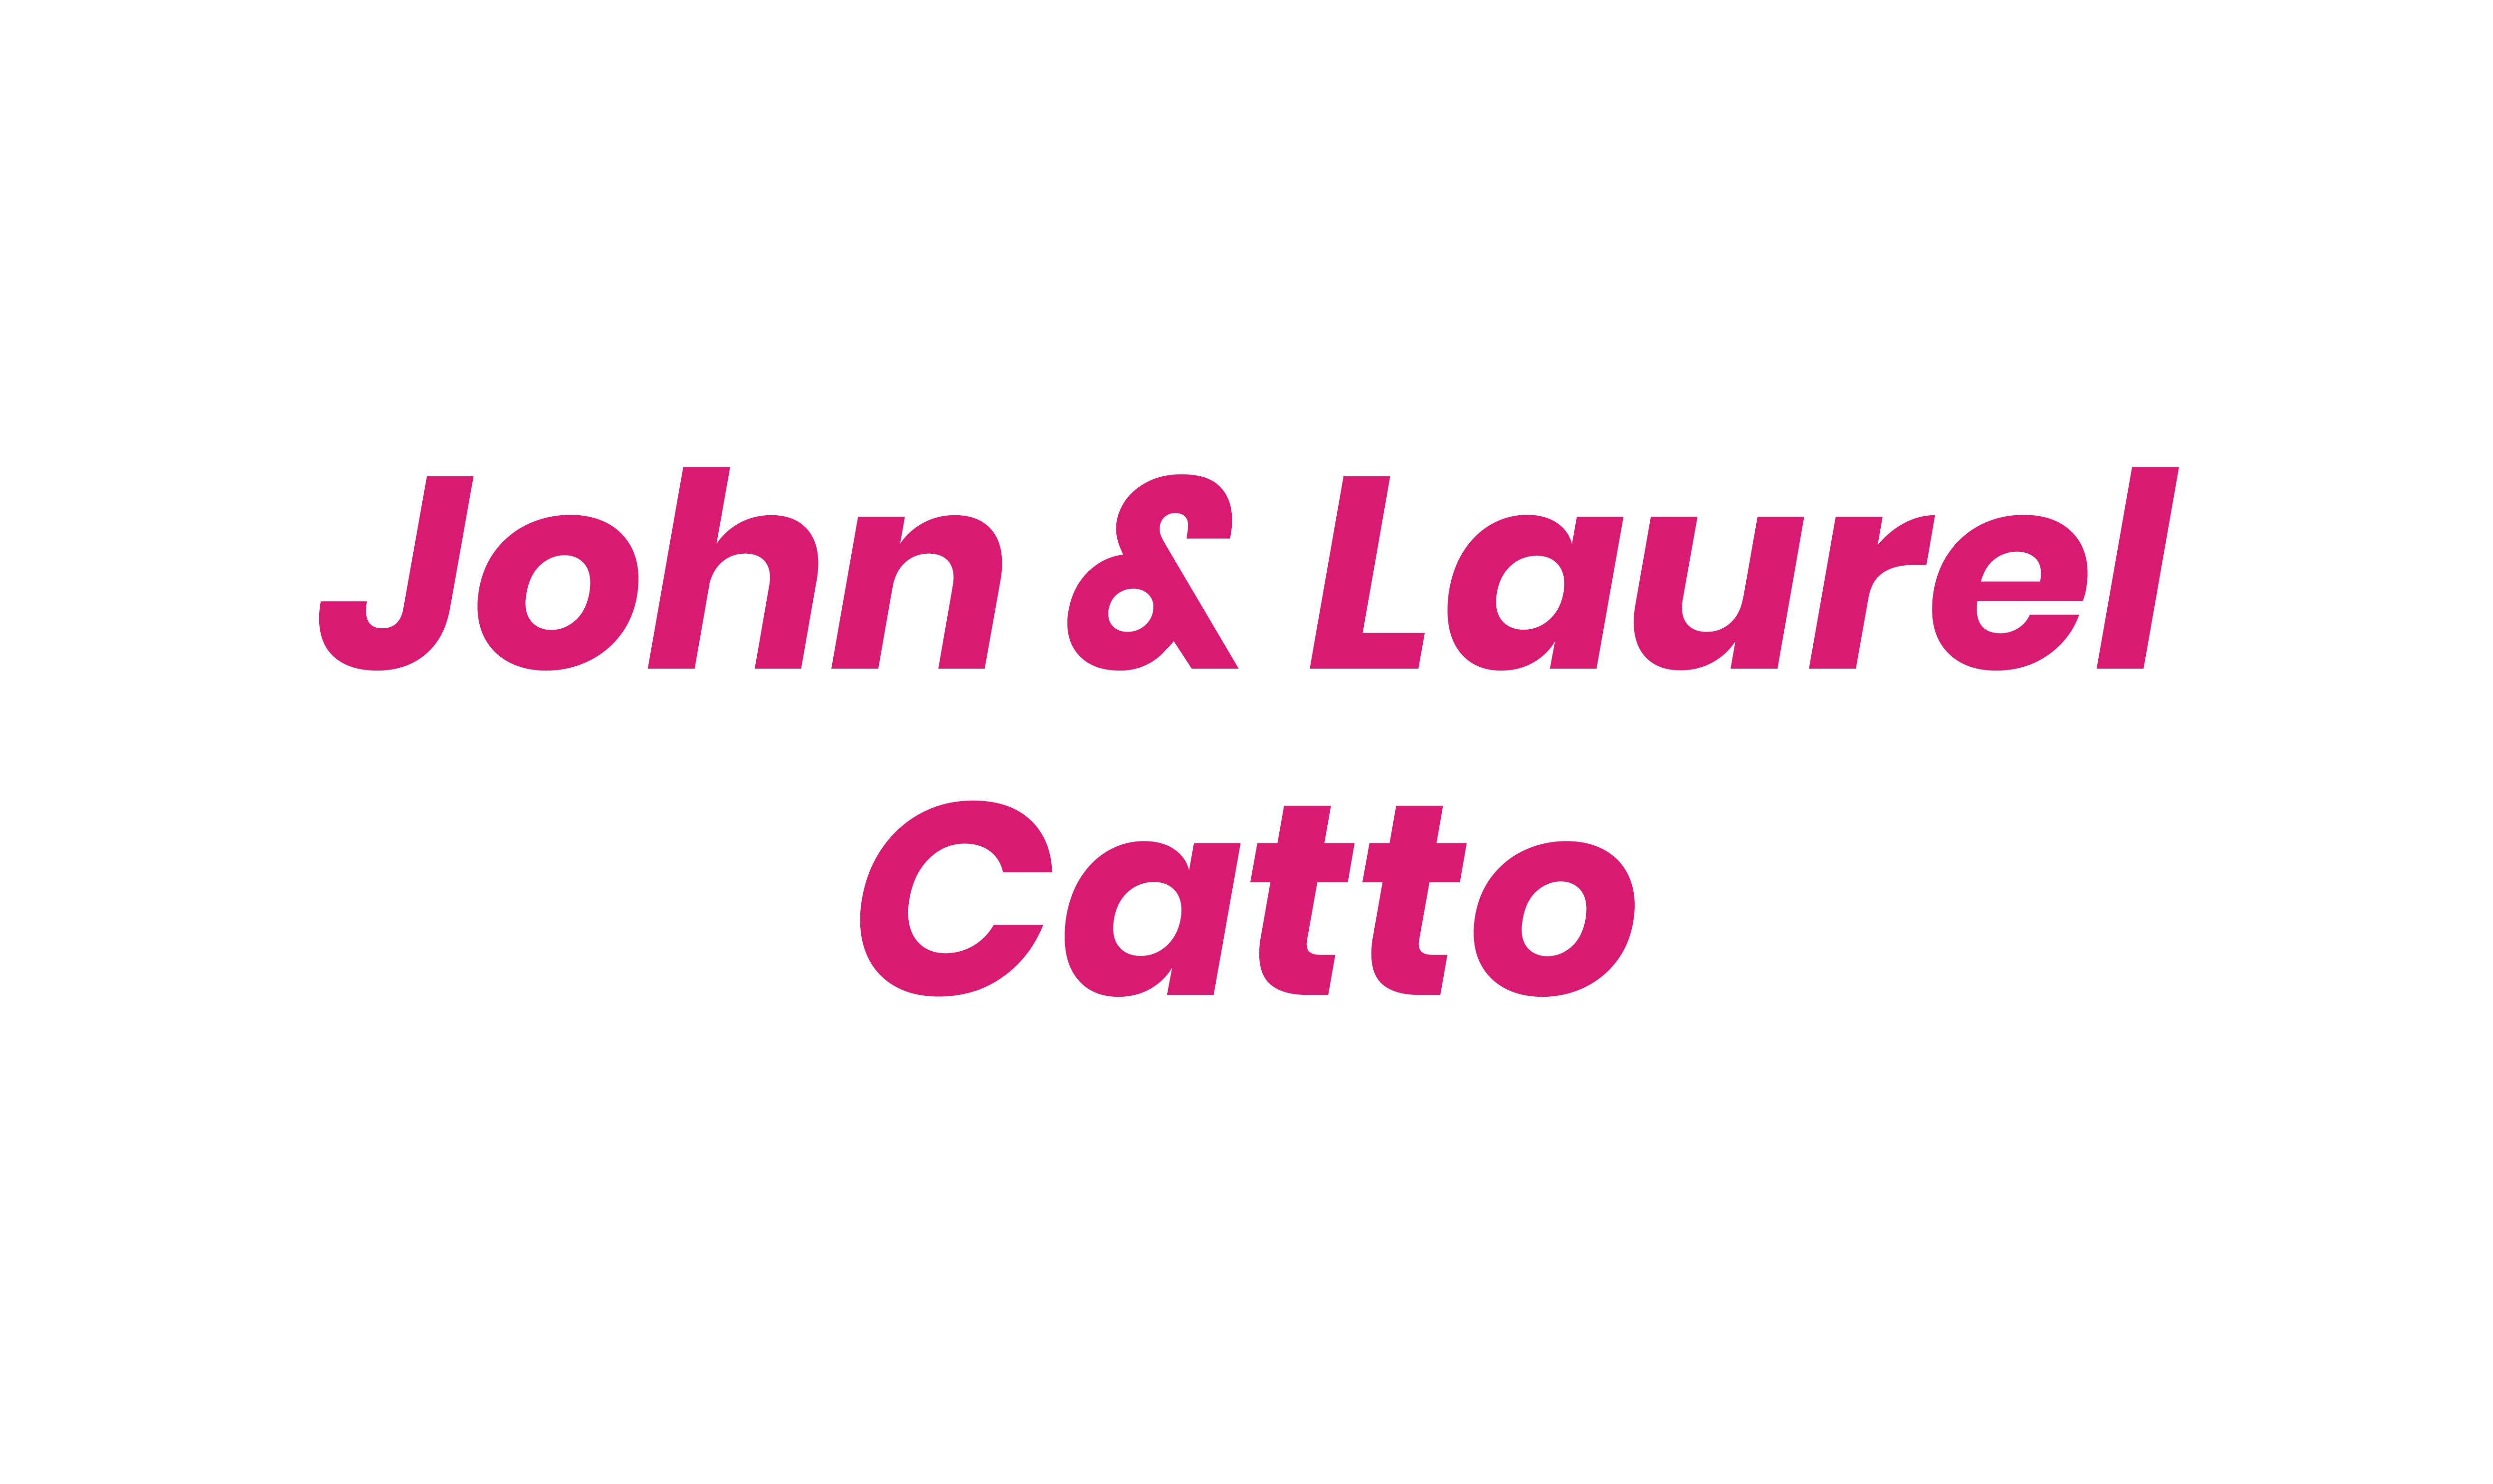 John & Laurel Catto